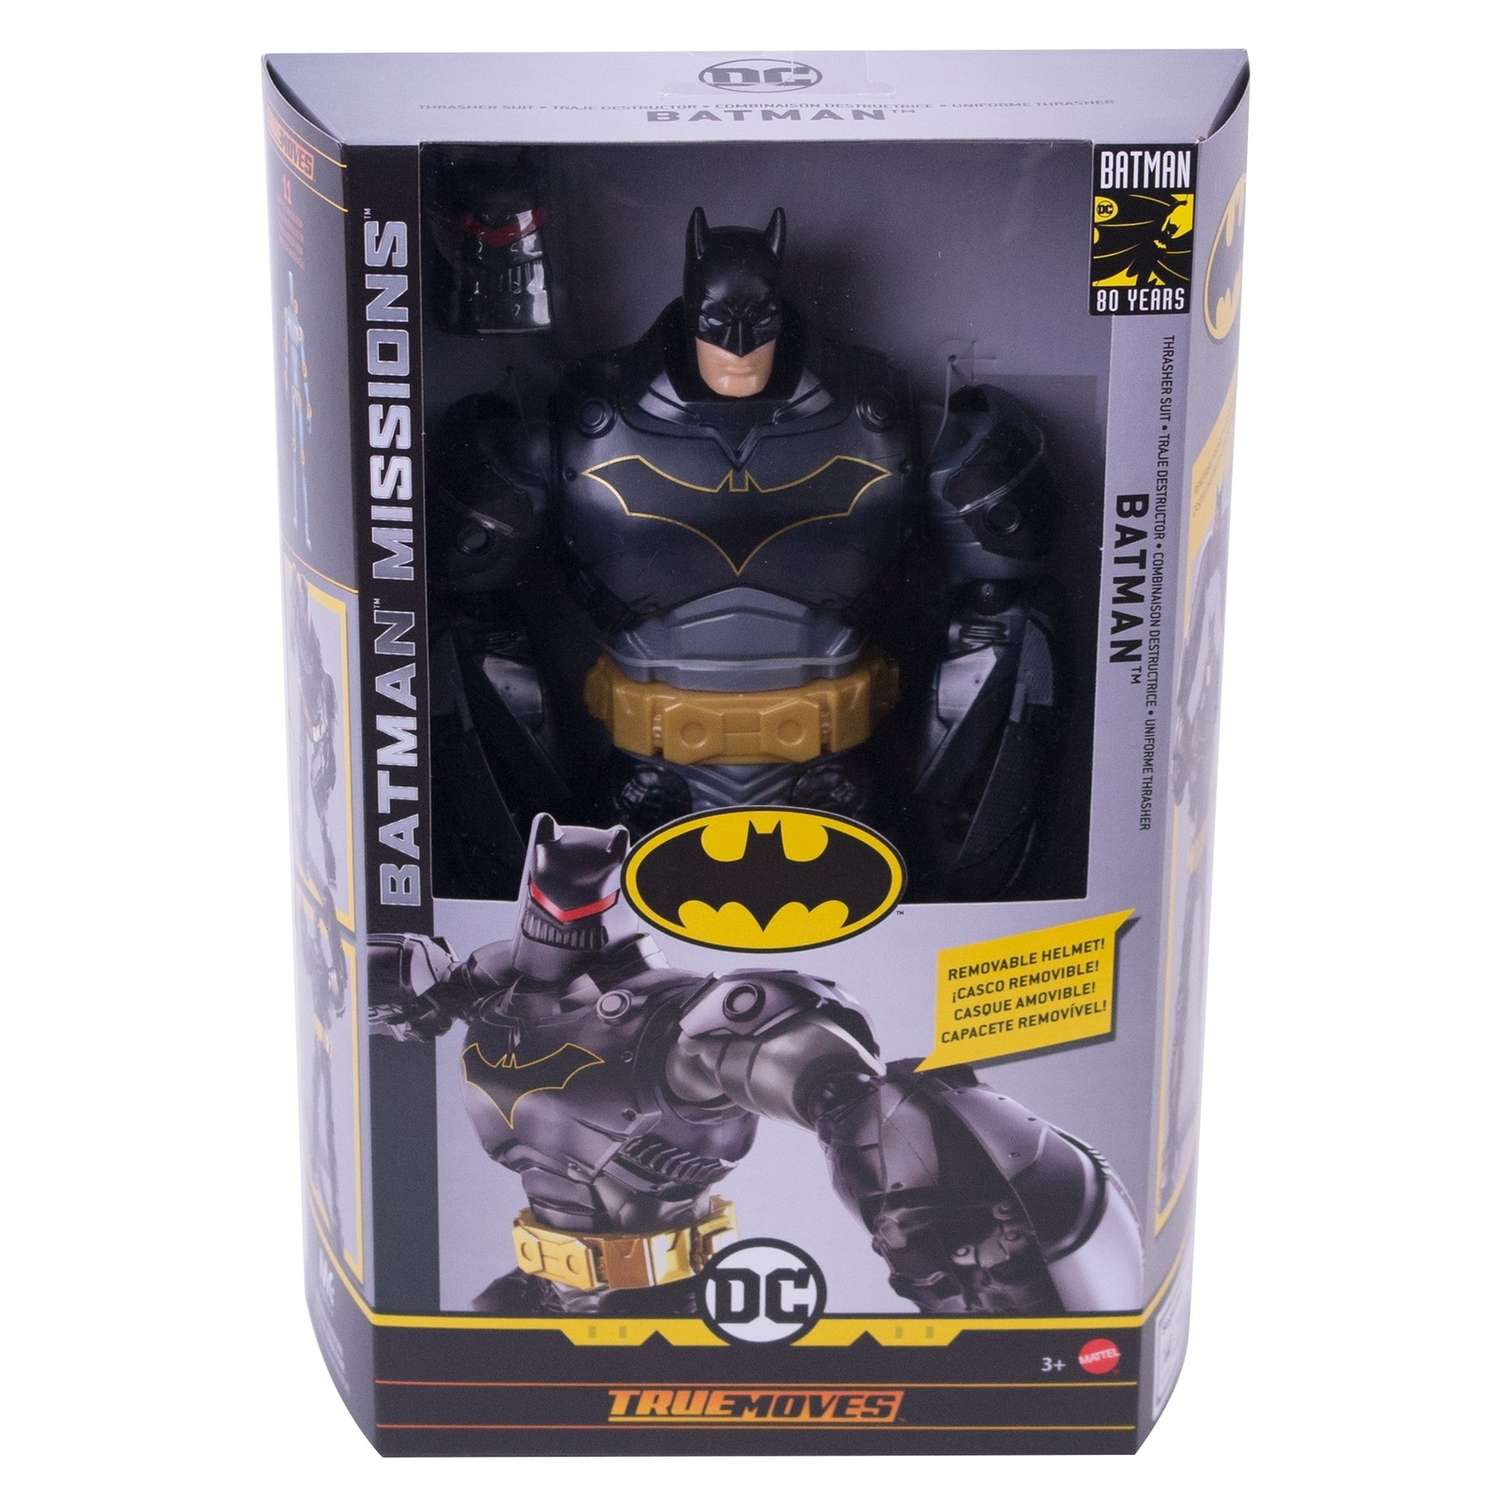 Batman наборы. Batman набор фигурок Бэтмен и киллер крок gck70. Игровой набор Mattel Batman Missions - Бэтмен против мен-бэта fvm63. Фигурка функциональная Batman. Большая фигурка Бэтмена.